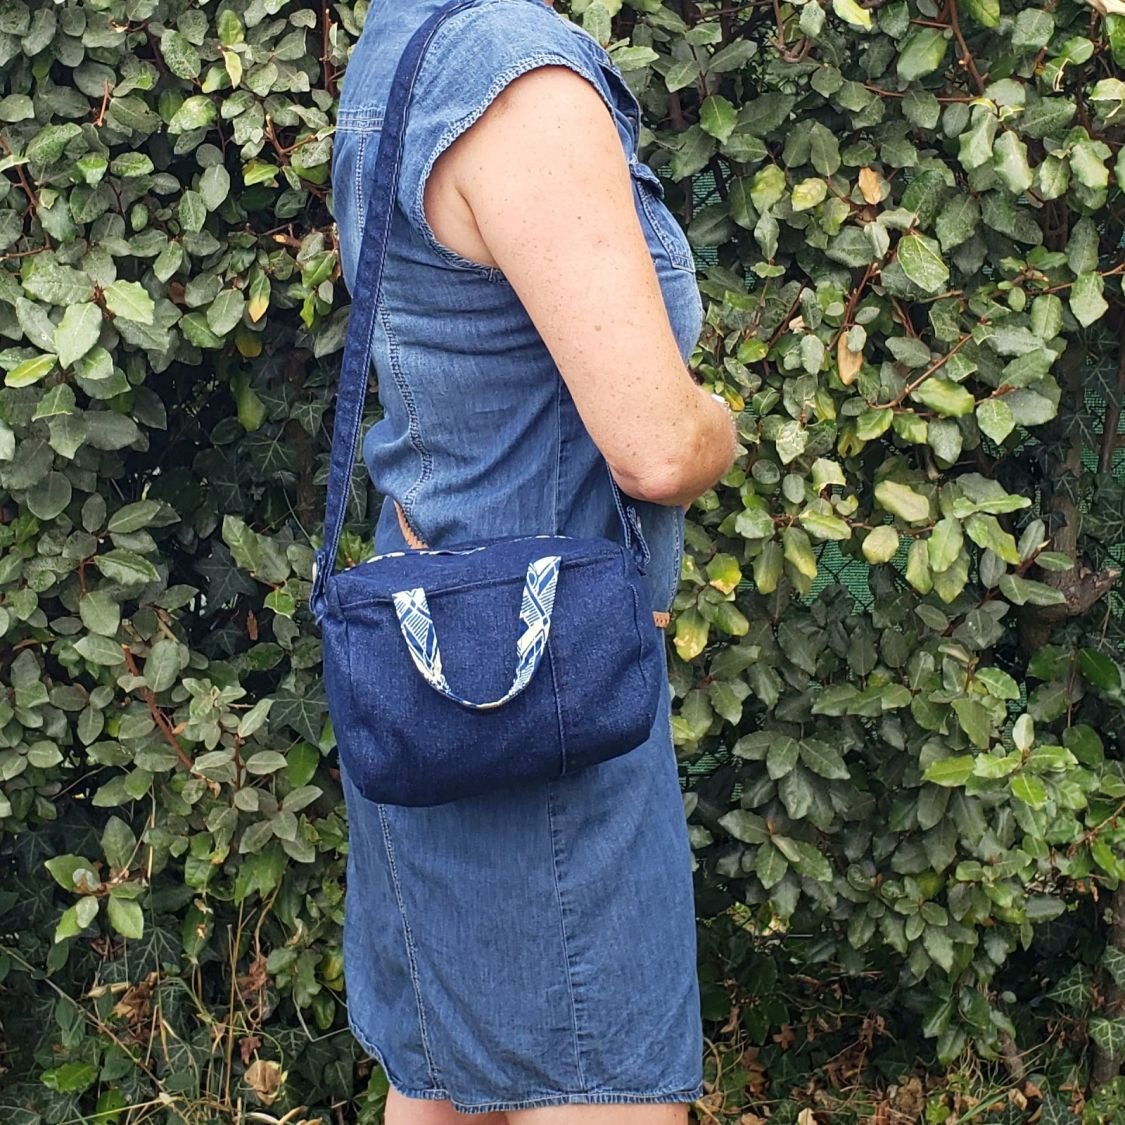 Mini sac à main en jean recyclé, doublé de tissu wax